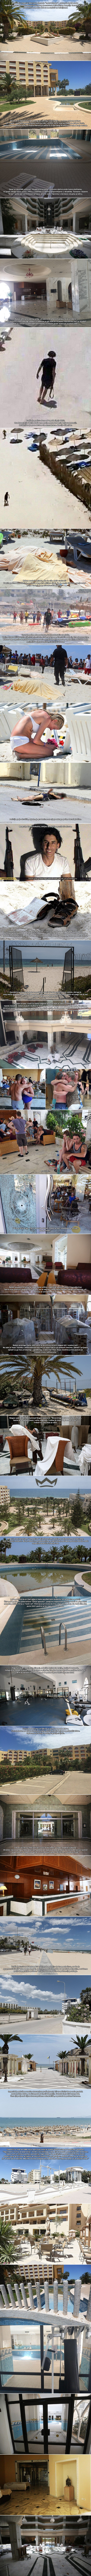 Stravične slike "hotela duhova" u kojem je ISIS-ov monstrum imao krvavi pir